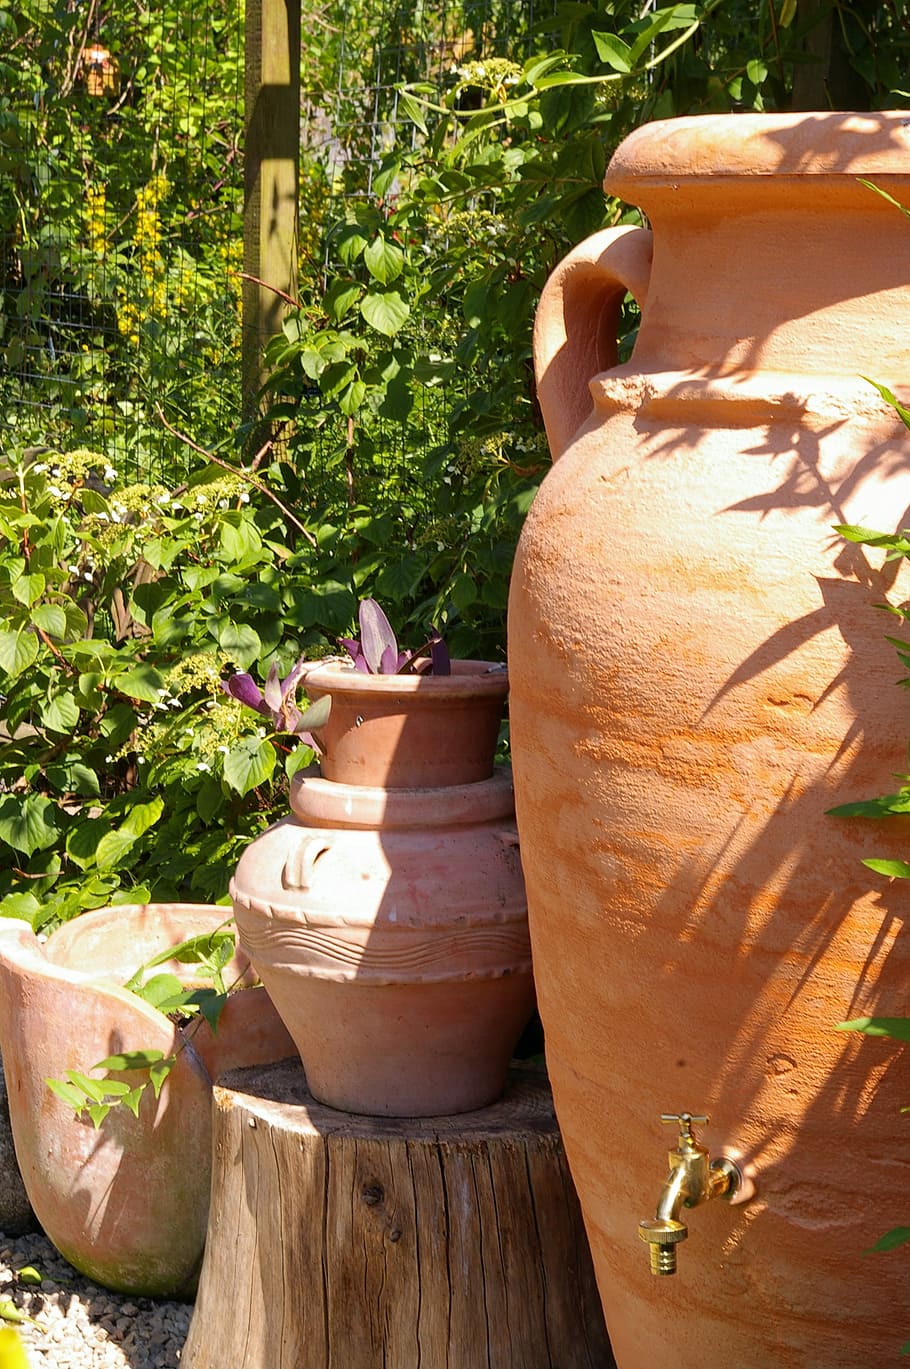 Mediterranean, Amphora, Garden, garden design, gartendeko, garden decoration, deco, wall, stone wall, flowers